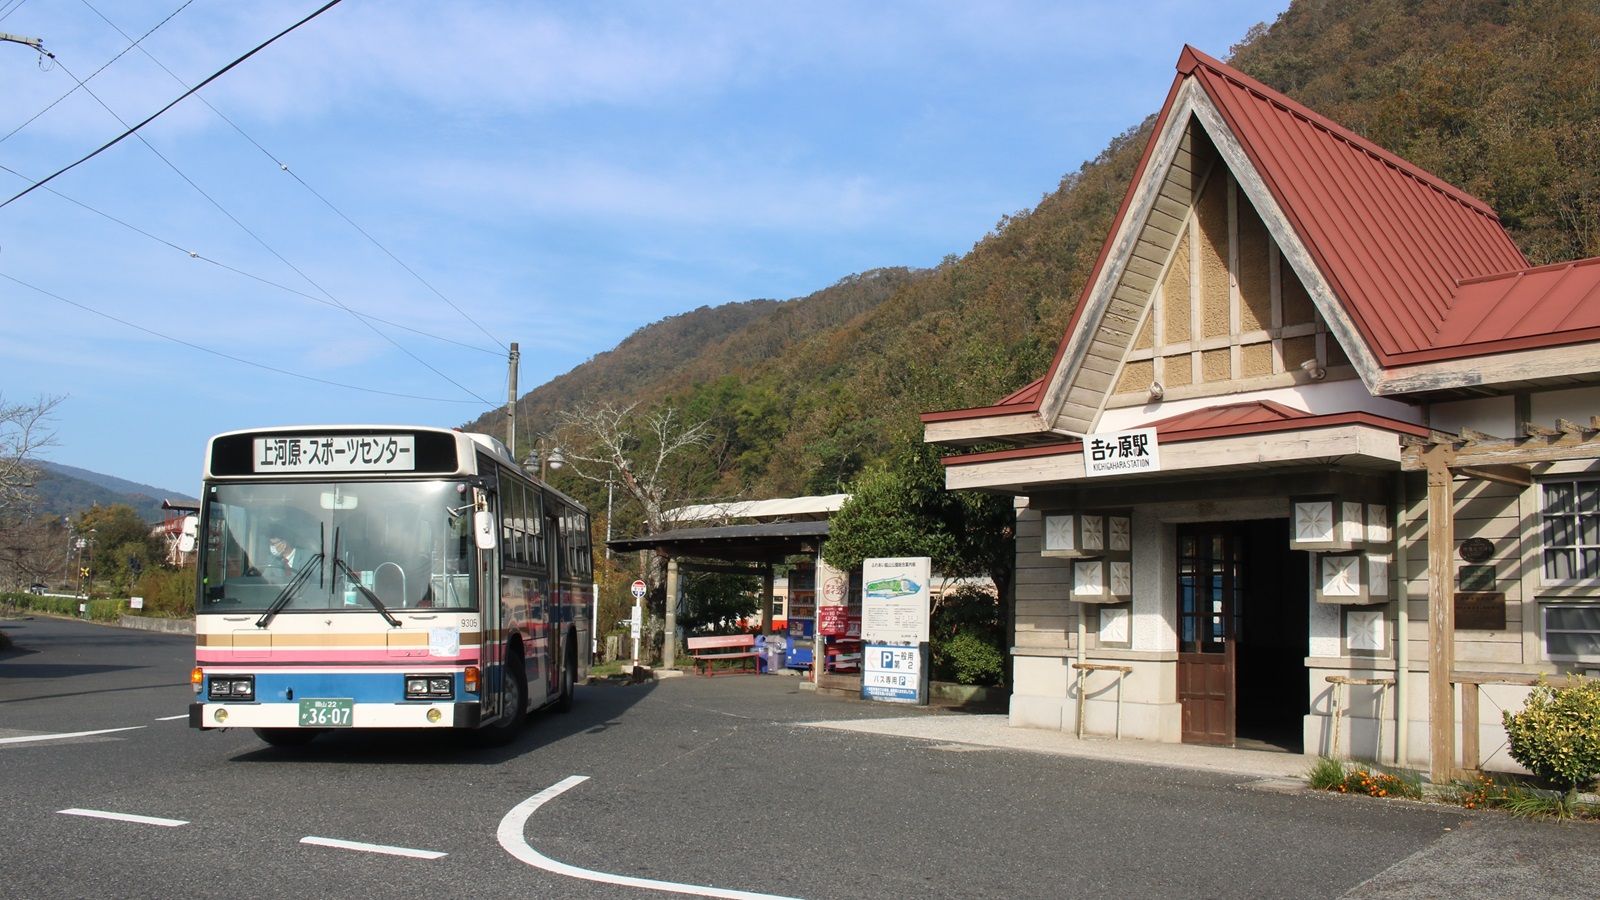 岡山の廃線｢片上鉄道｣代替バスは別ルートの事情 貨物の流れから人の流れへ交通路が再編された